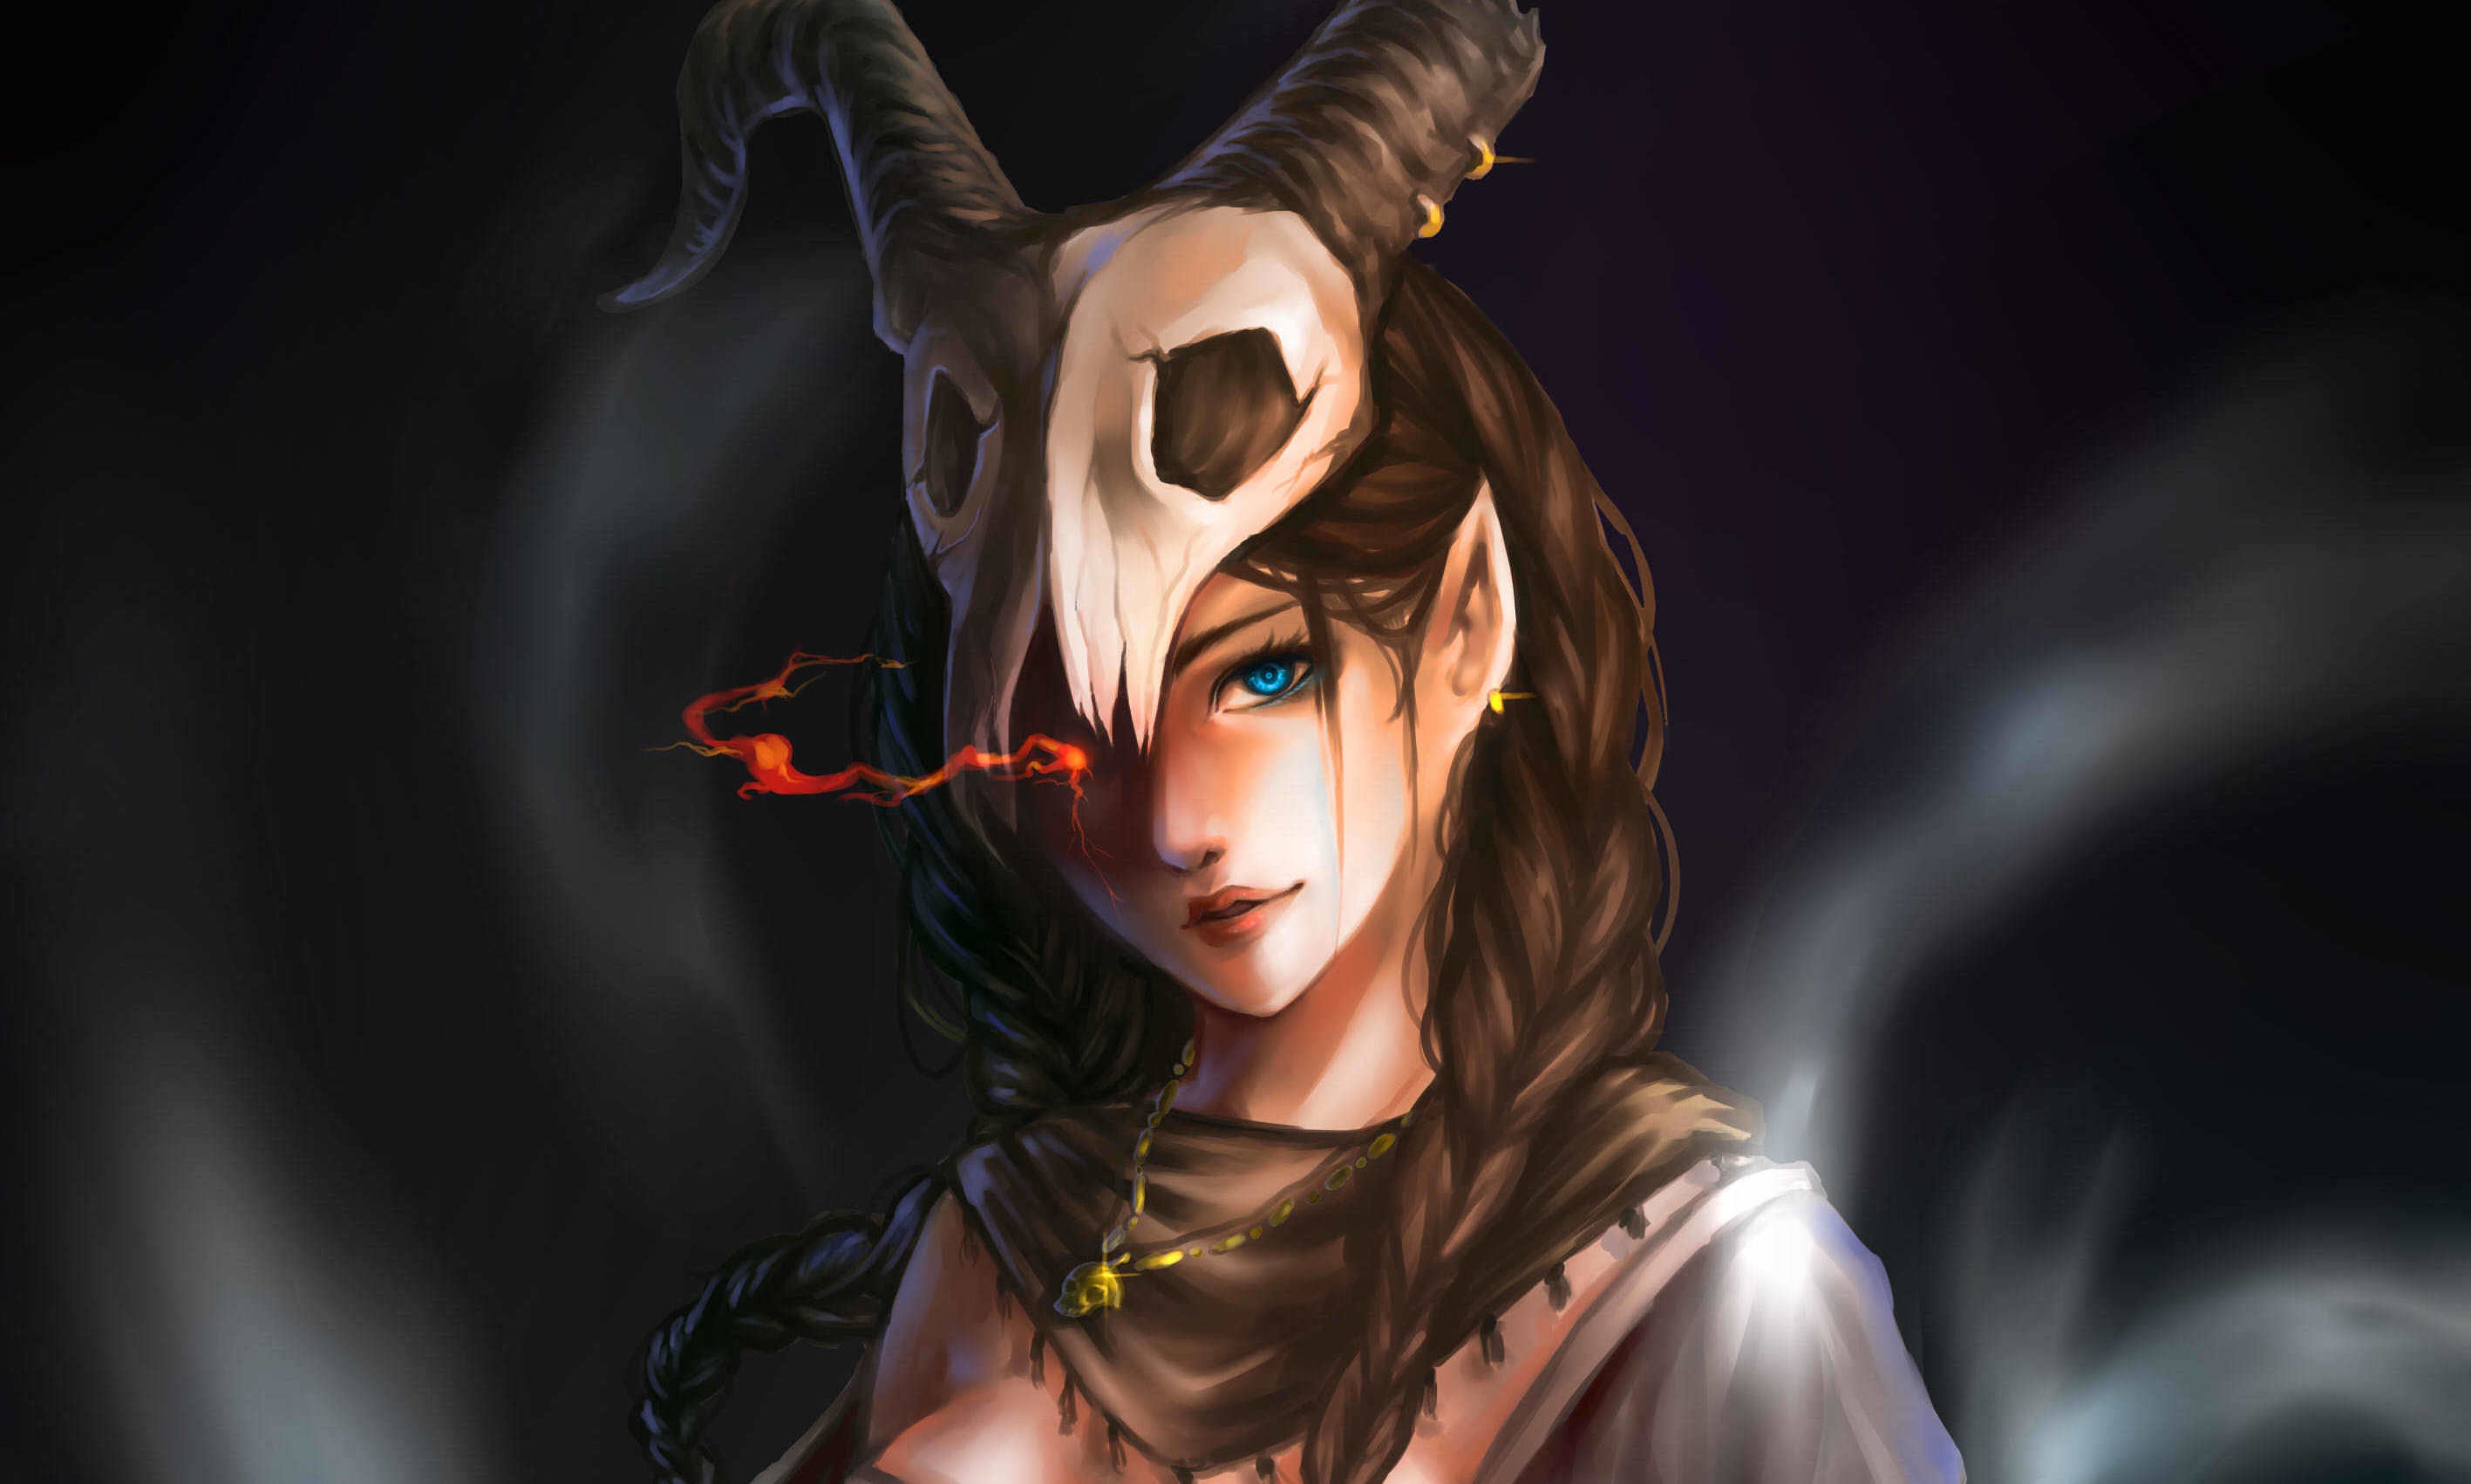 General 2834x1702 elves women pointy ears skull horns blue eyes magic pendant artwork fantasy art fantasy girl digital art